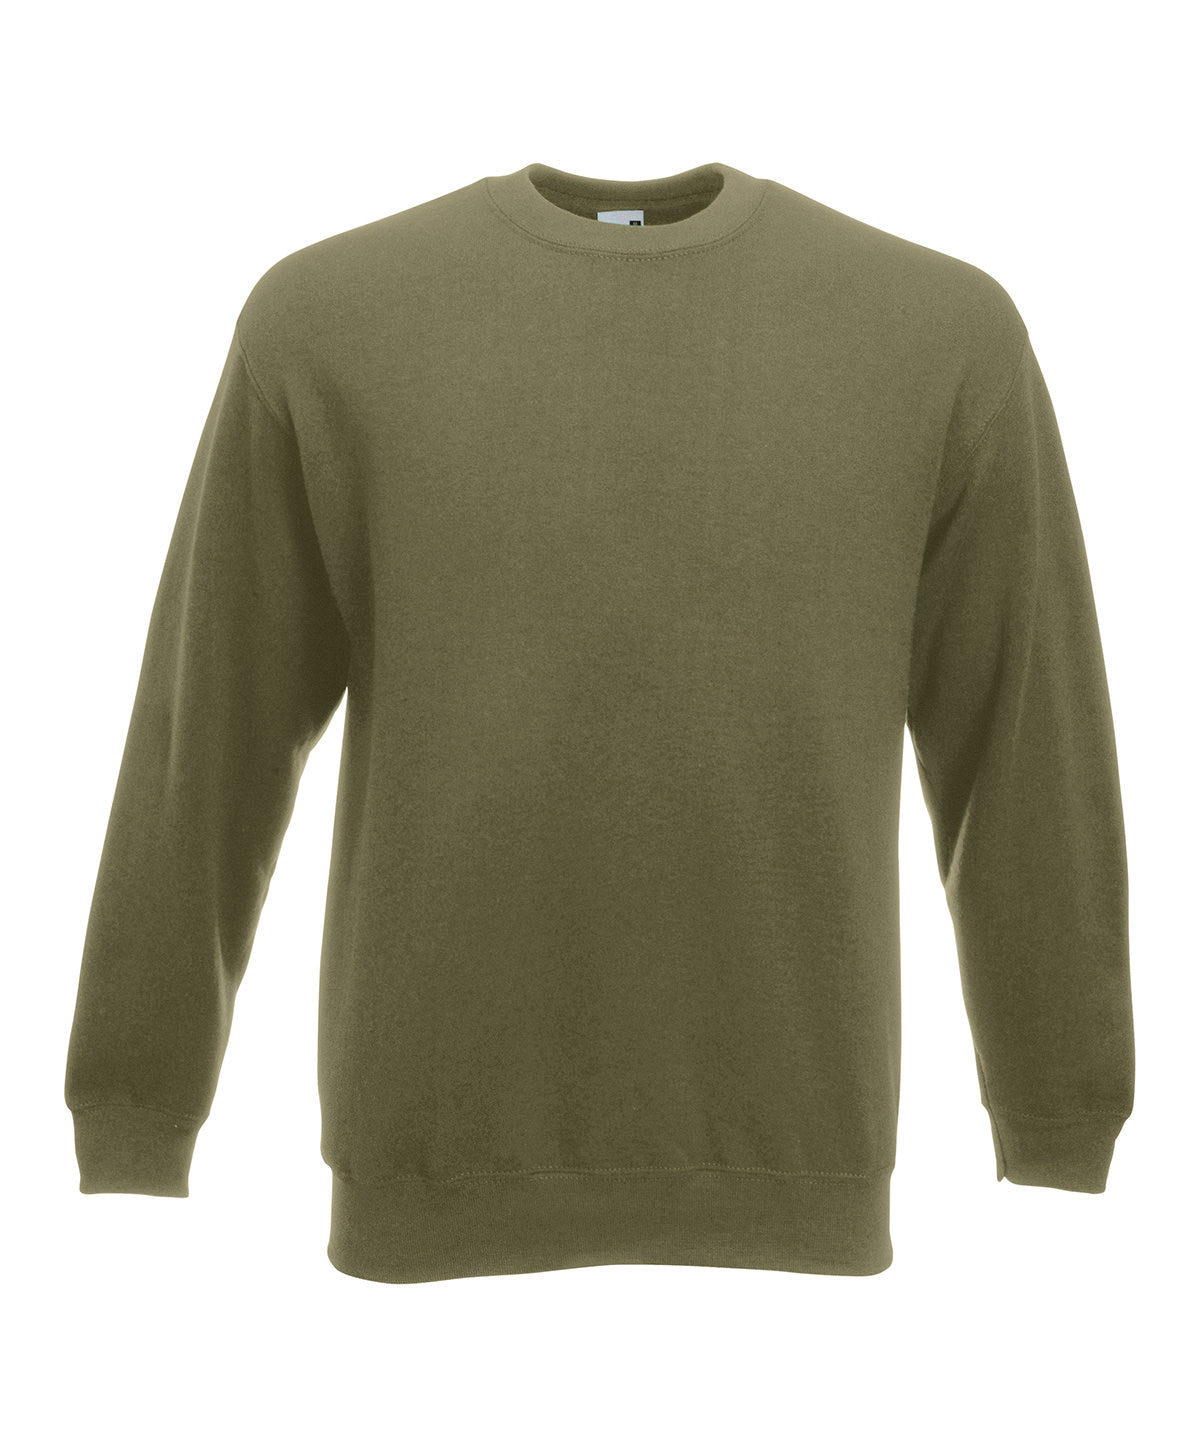 Premium 70/30 set-in sweatshirt